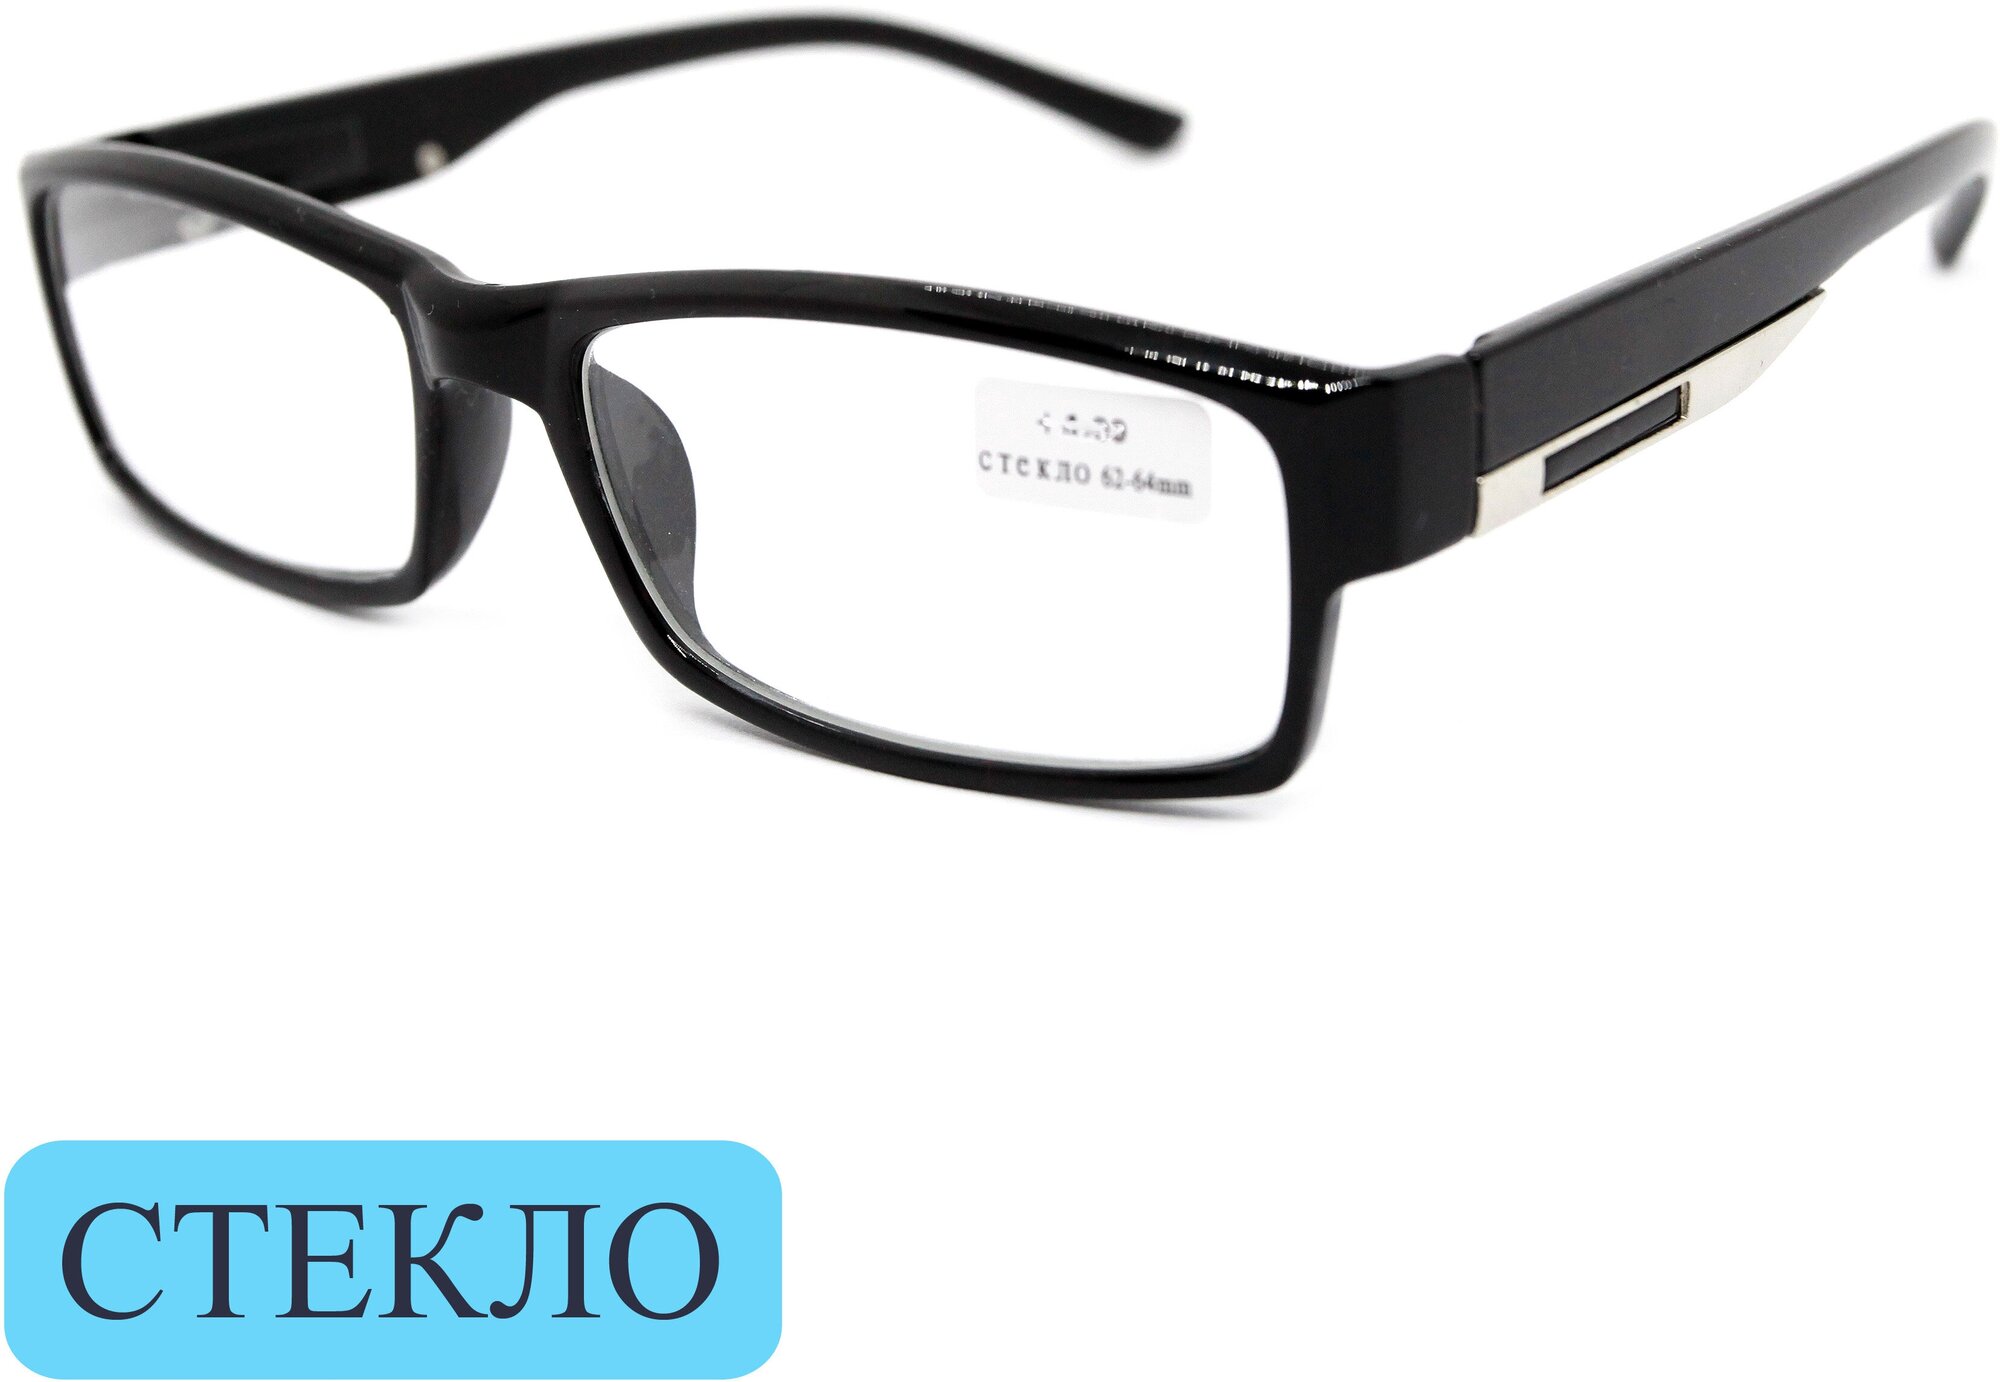 Готовые очки мужские со стеклом (+2.50) , восток 6613, линза стекло, цвет черный, РЦ 62-64